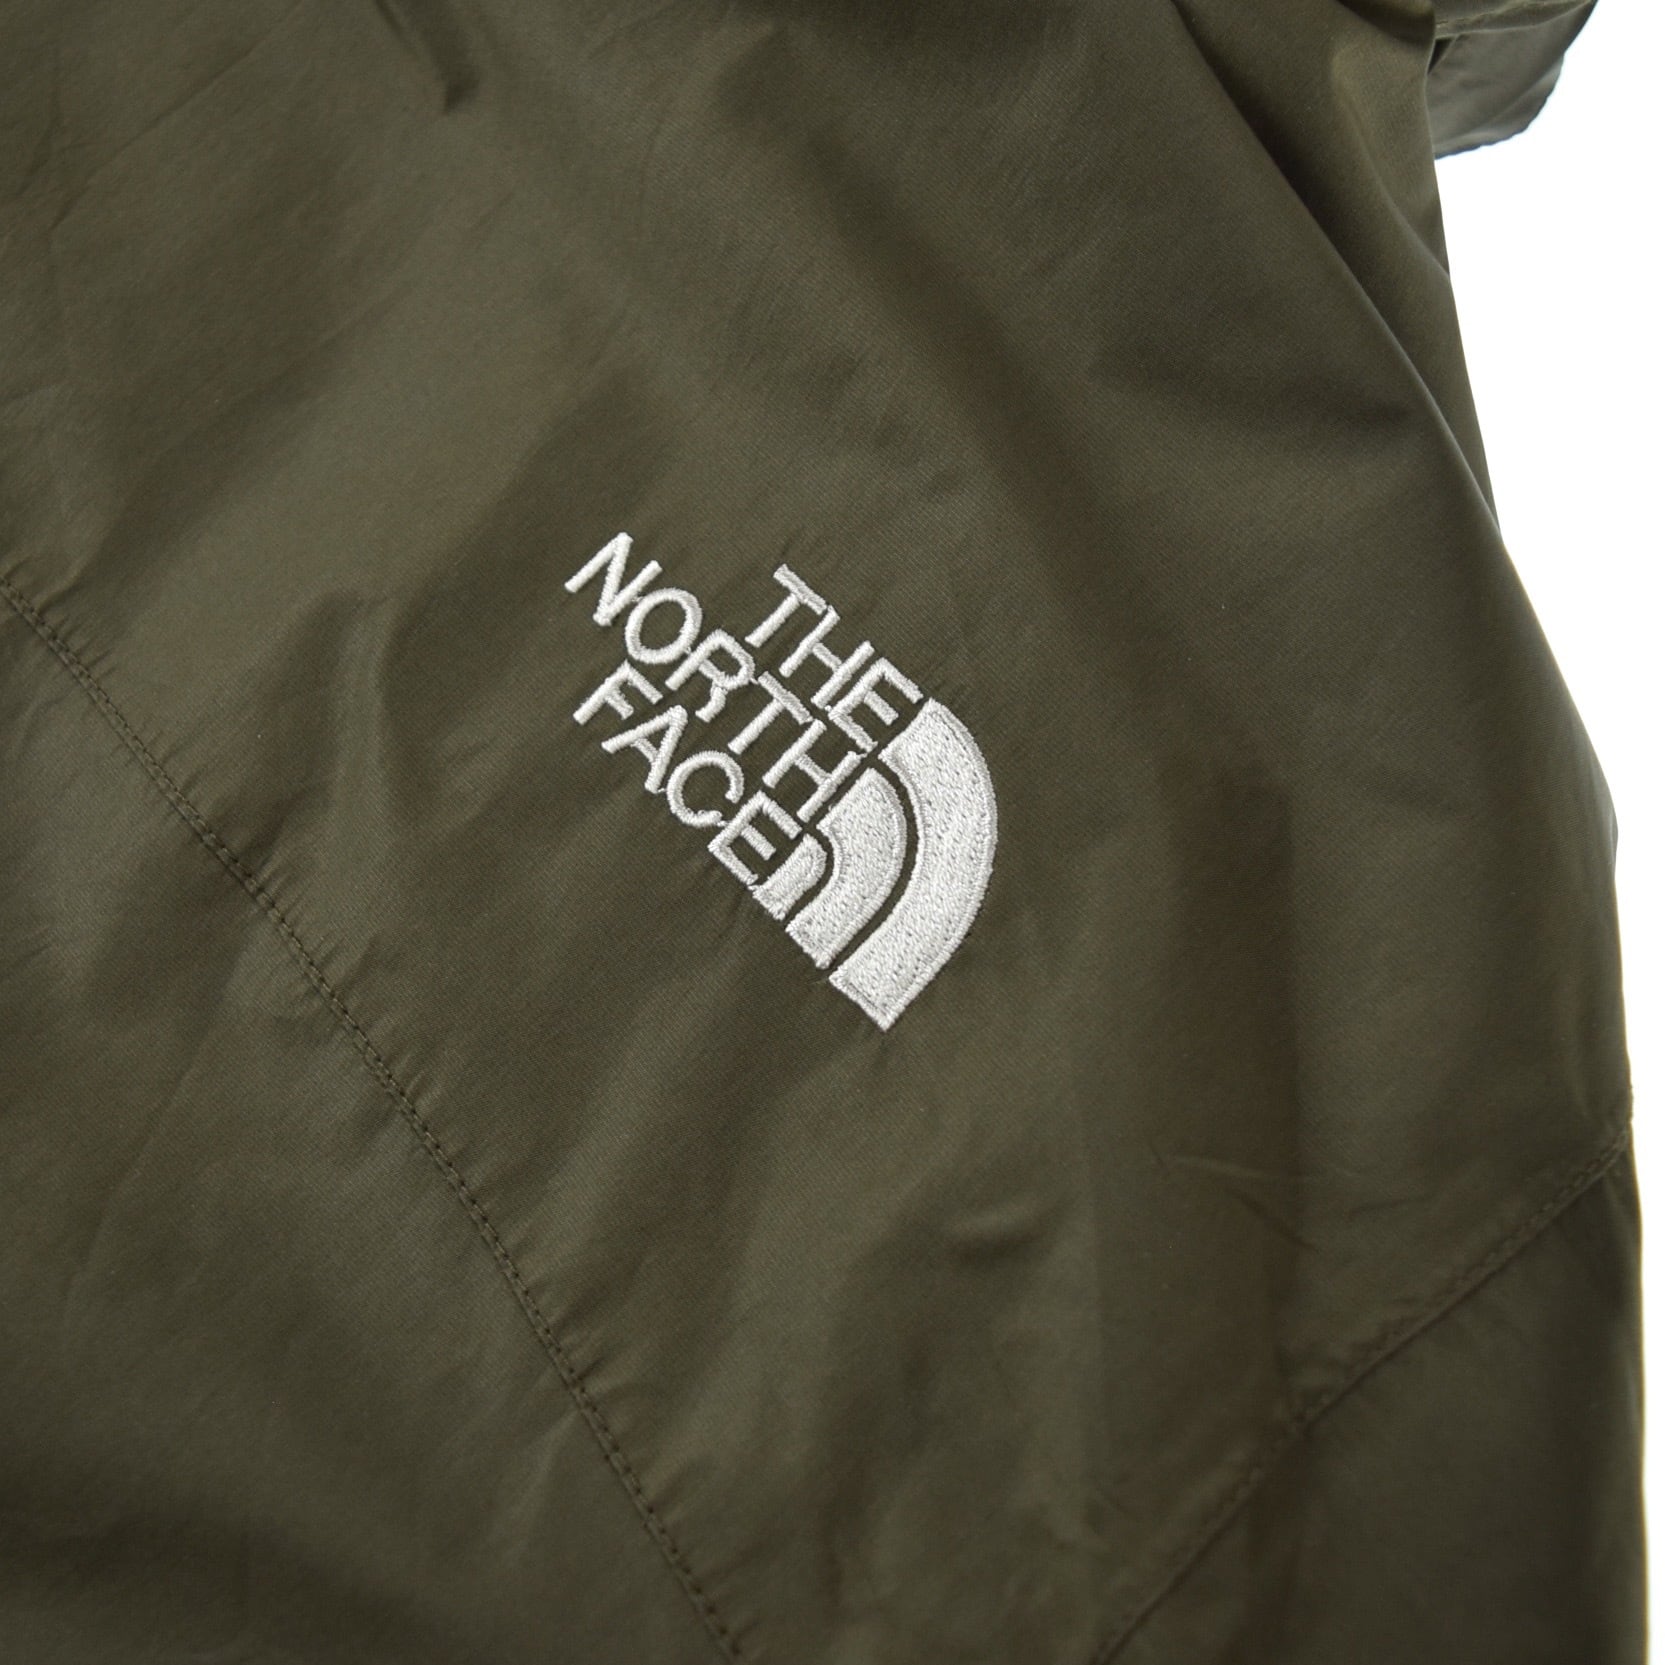 2012 ノースフェイス GORE-TEX 刺繍ロゴ マウンテンパーカー